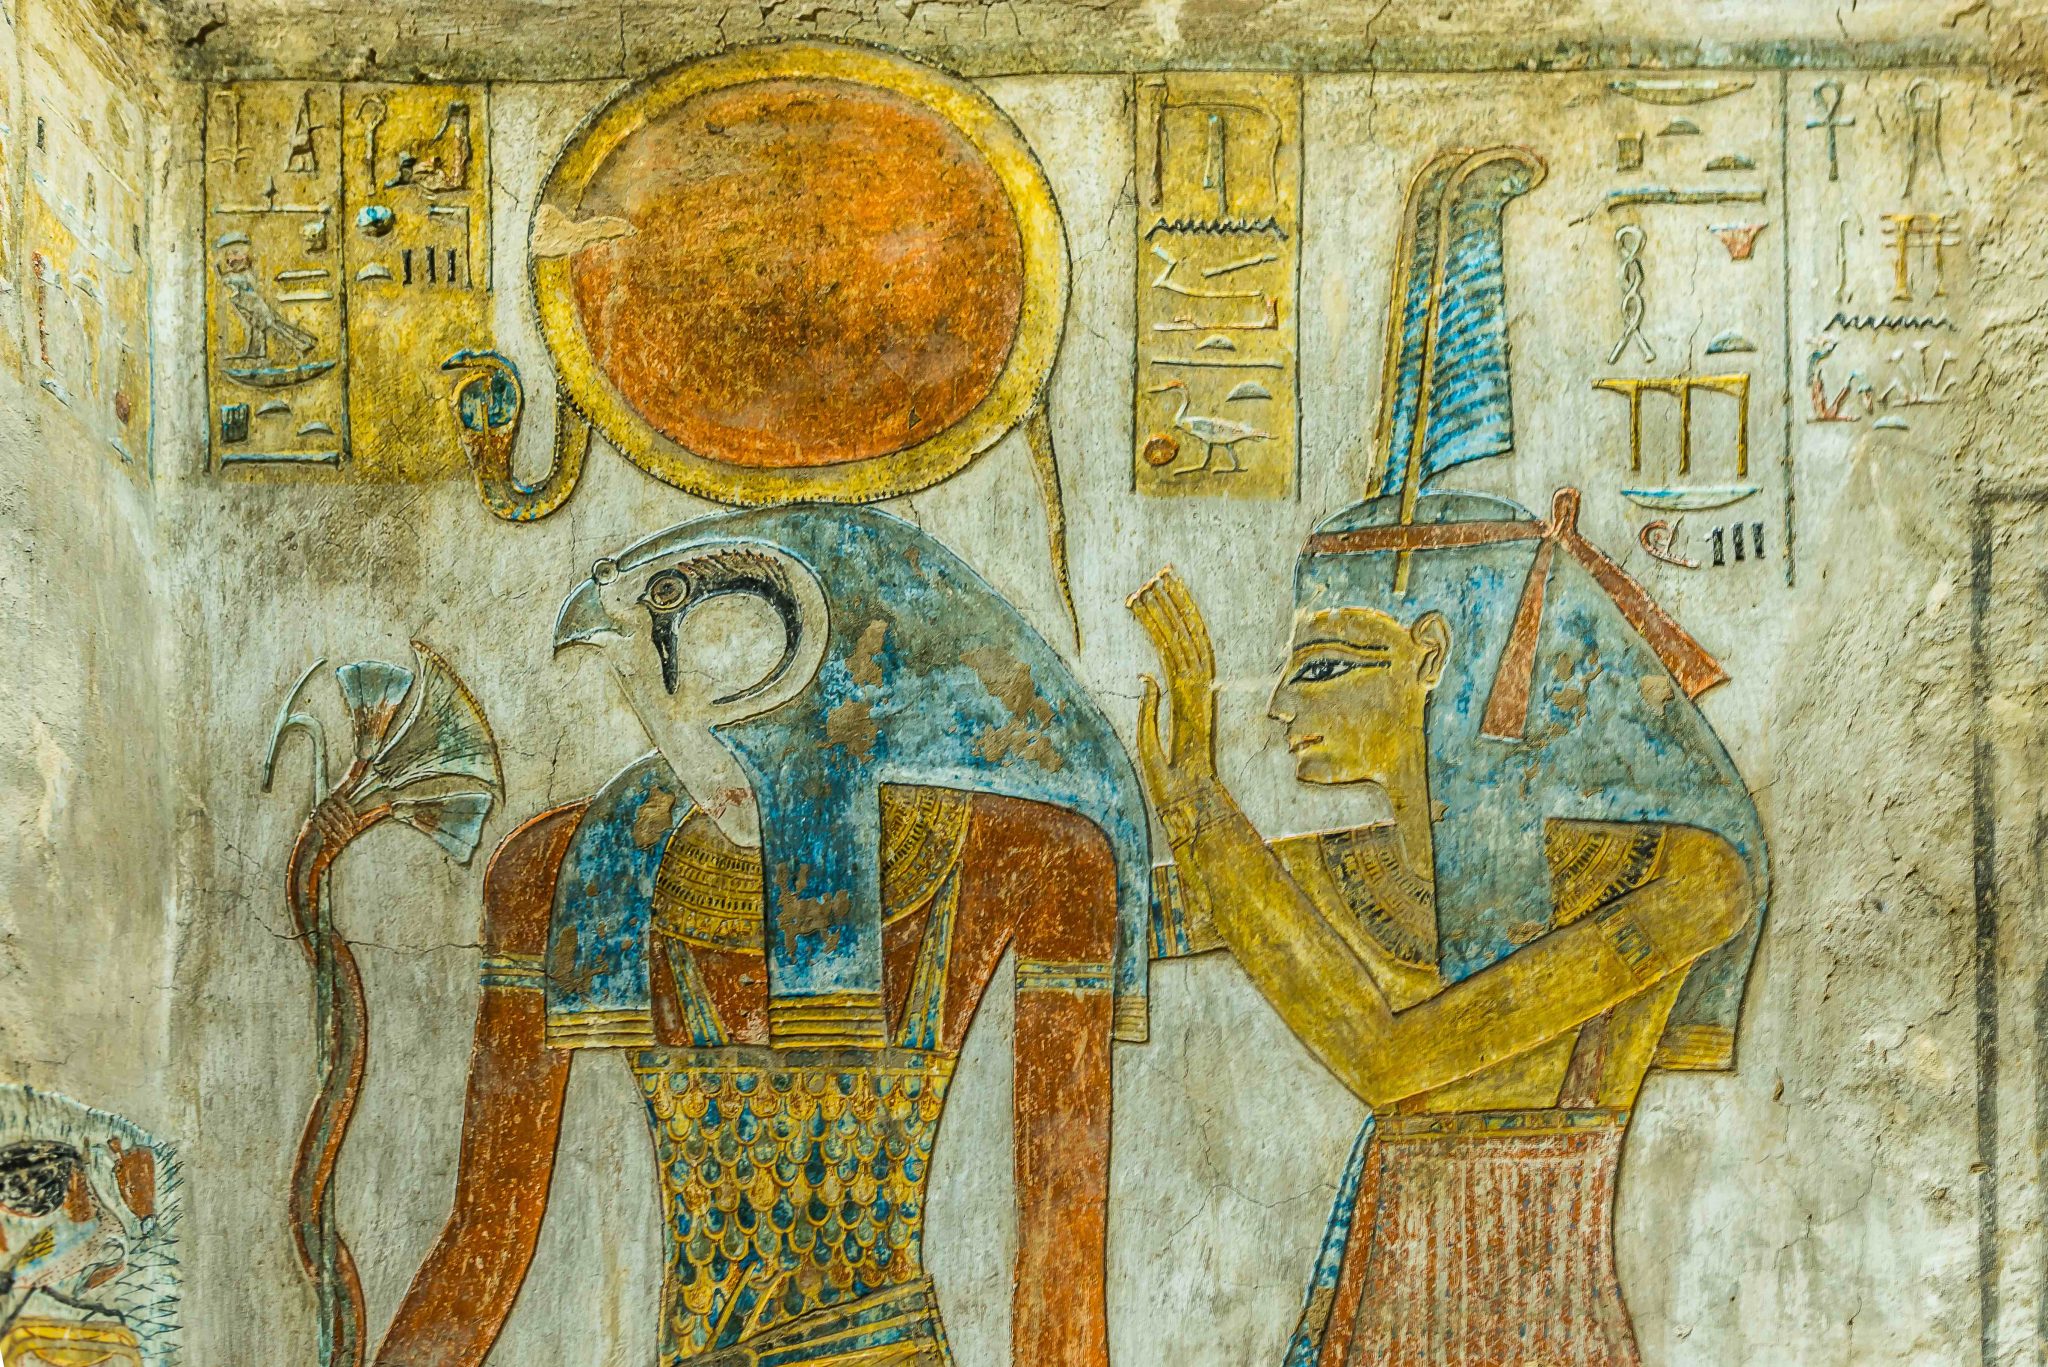 2. Egyptian God Ra Tattoo - wide 10